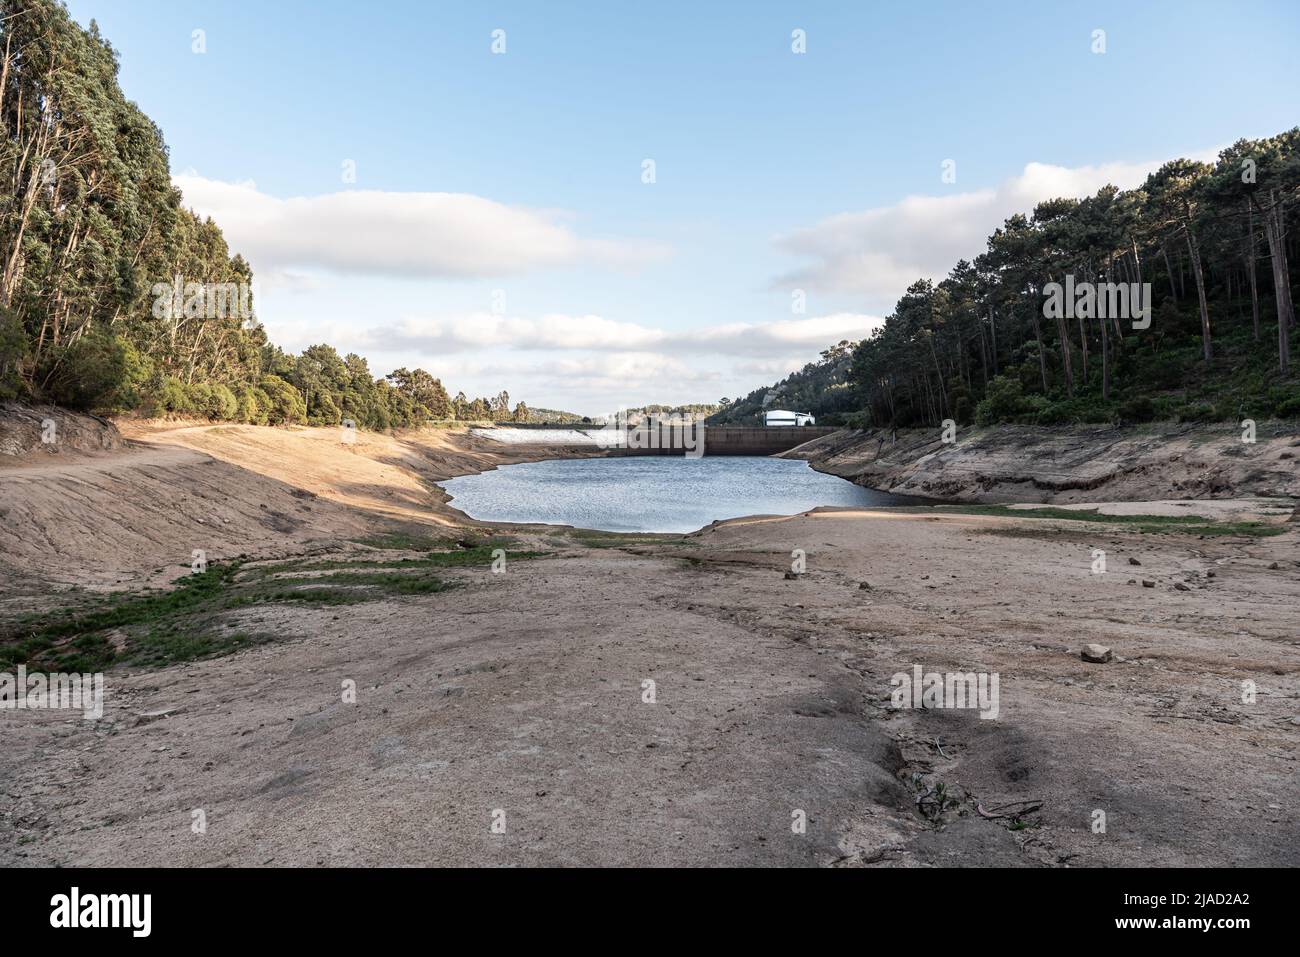 Serra de Sintra, Portugal - 22. Mai 2022: Stausee und Staudamm des Flusses Mula - Barragem do Rio Mula - während der Dürre im Frühjahr, wodurch der Wasserstand niedrig bleibt Stockfoto